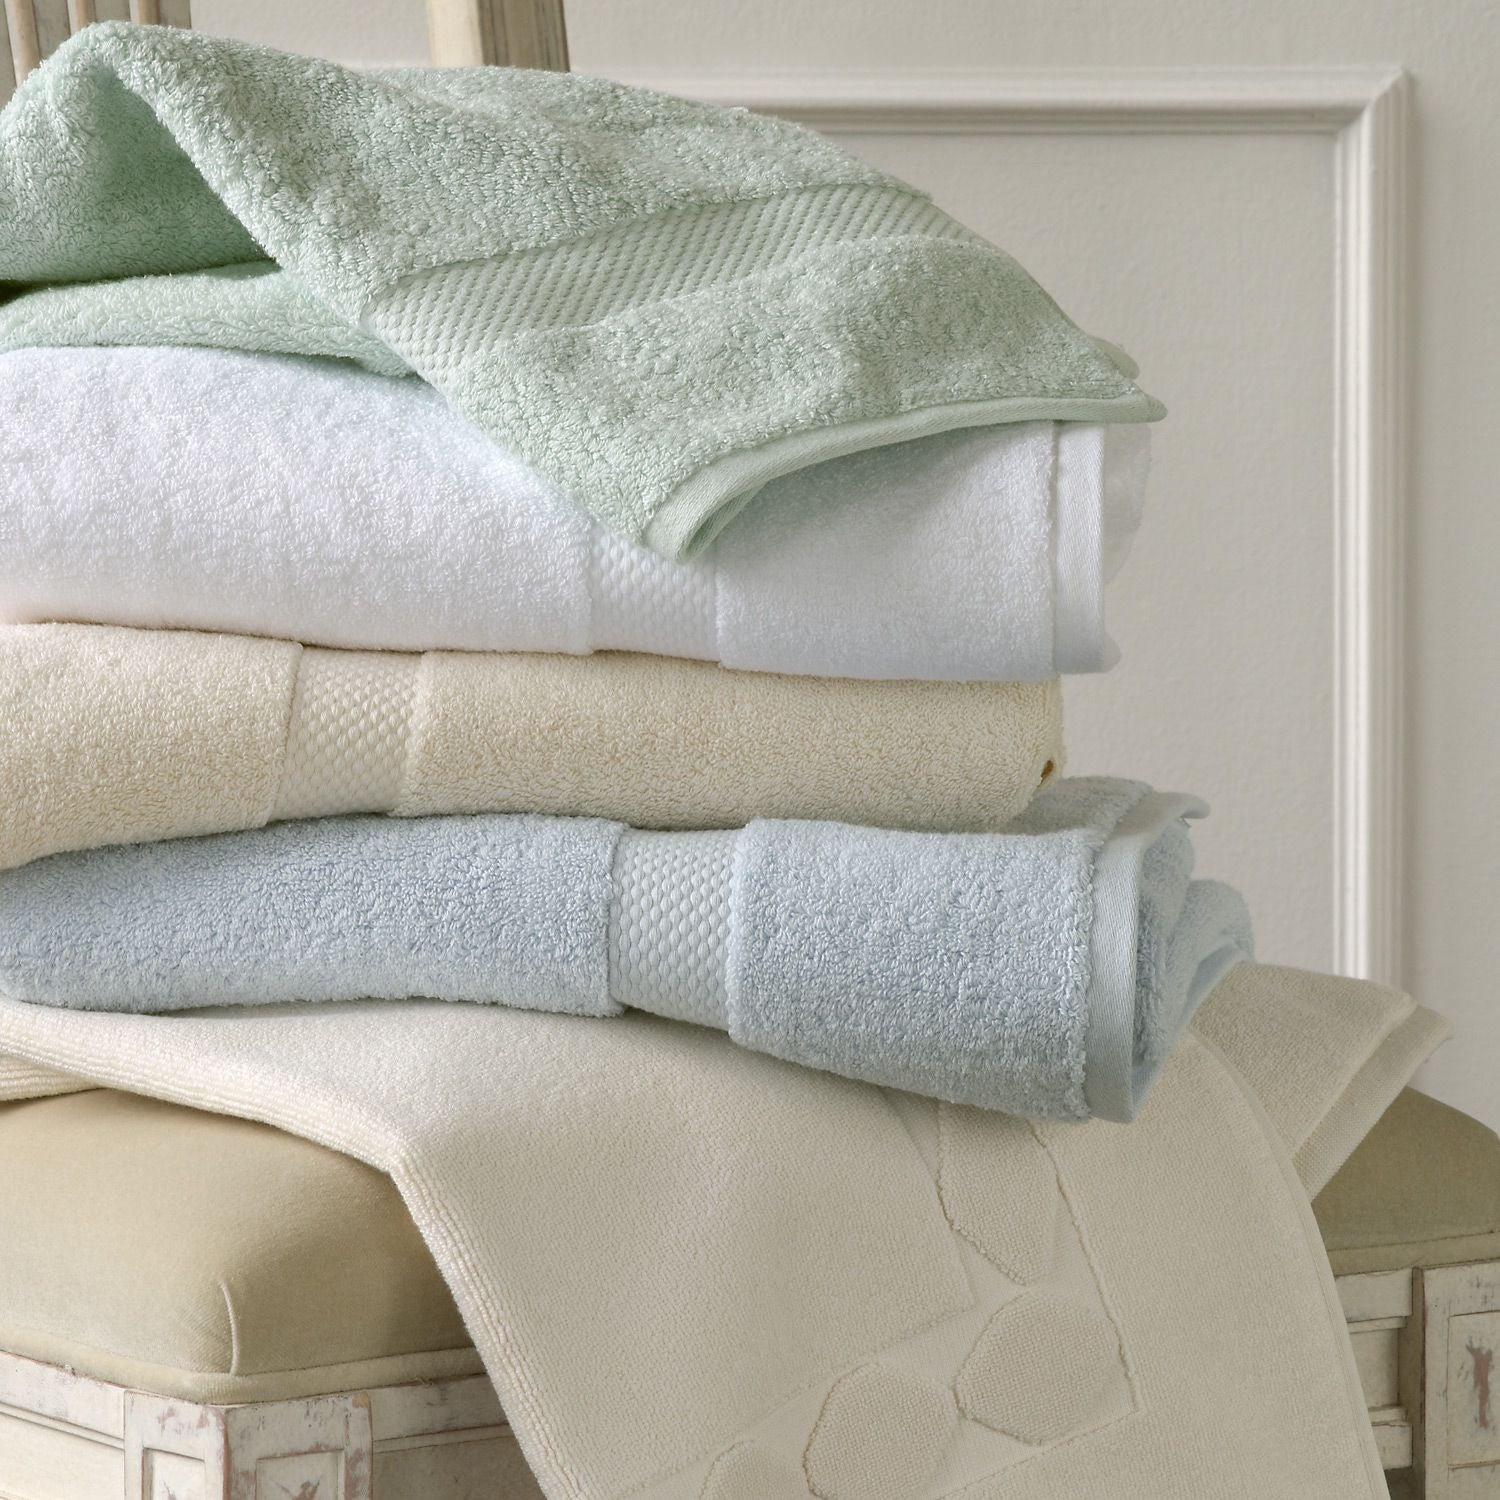 Textile полотенце. Постельное белье и полотенца. Текстиль для дома. Текстиль полотенца. Пледы полотенца постельное белье.